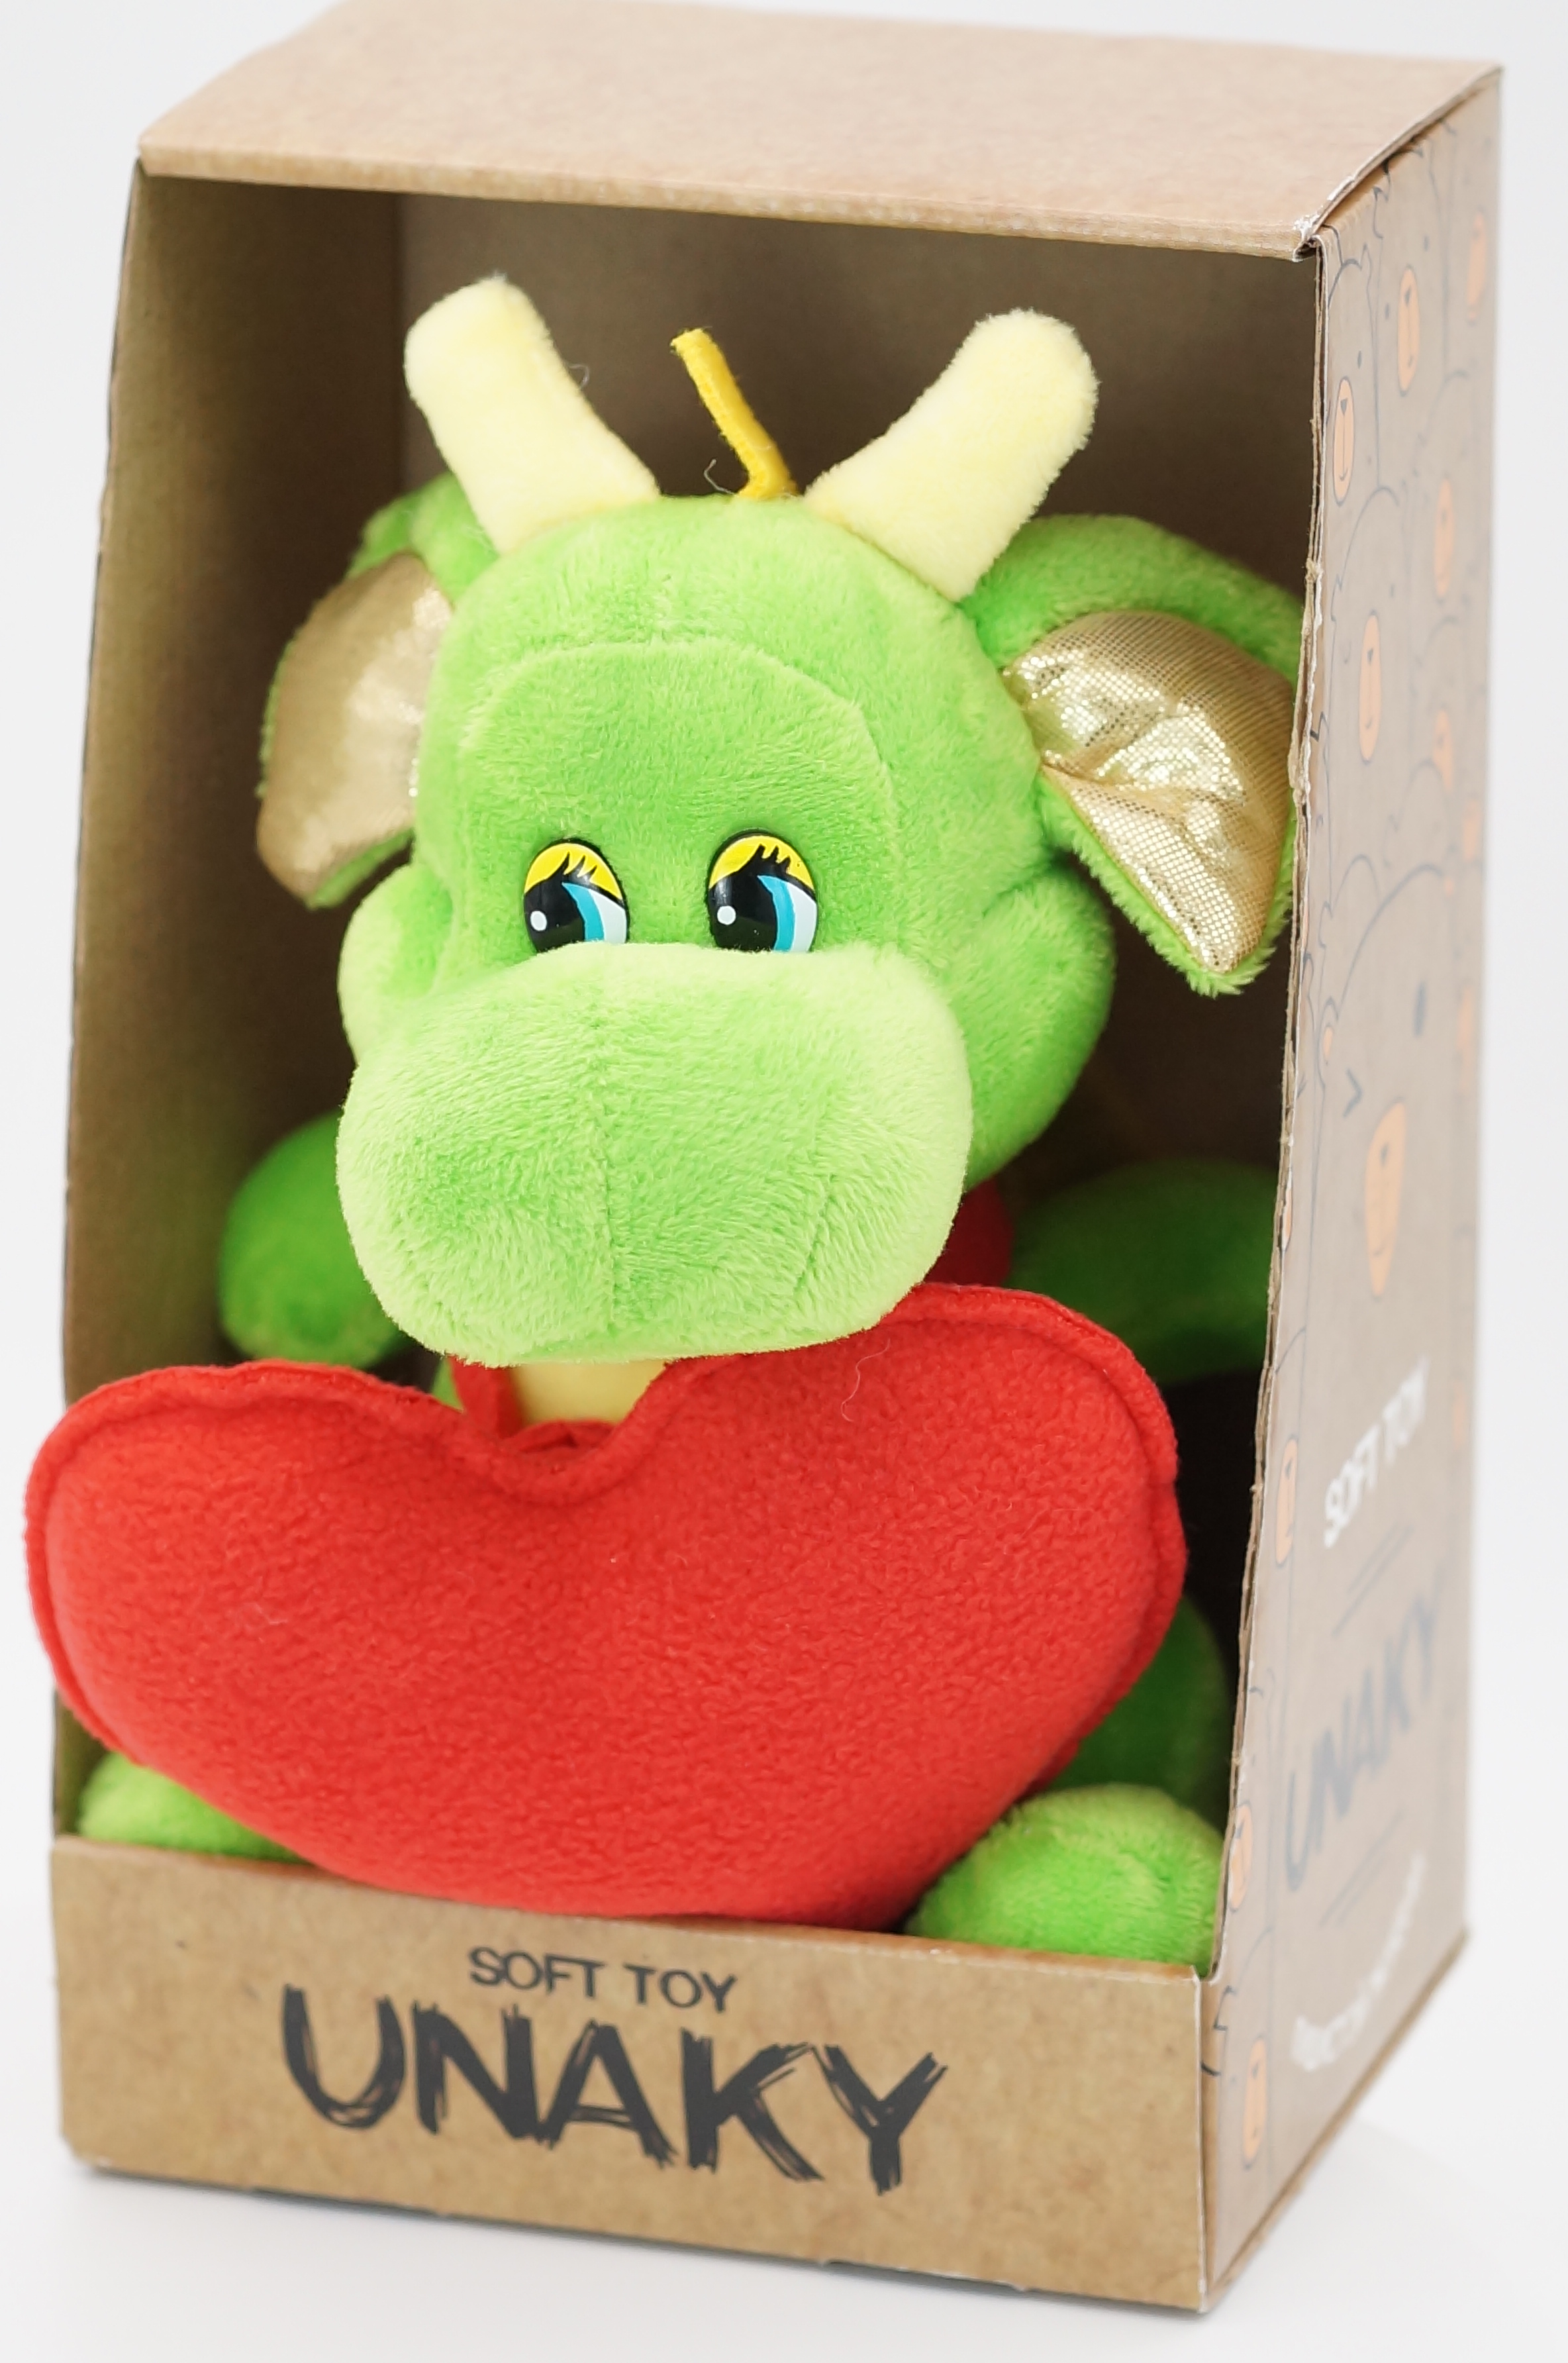 Мягкая игрушка Unaky Soft Toy дракон Горыныч 20-23 см 0965417-44K зеленый мягкая игрушка unaky soft toy дракончик роб 20 см 0888320 зеленый белый красный голубой